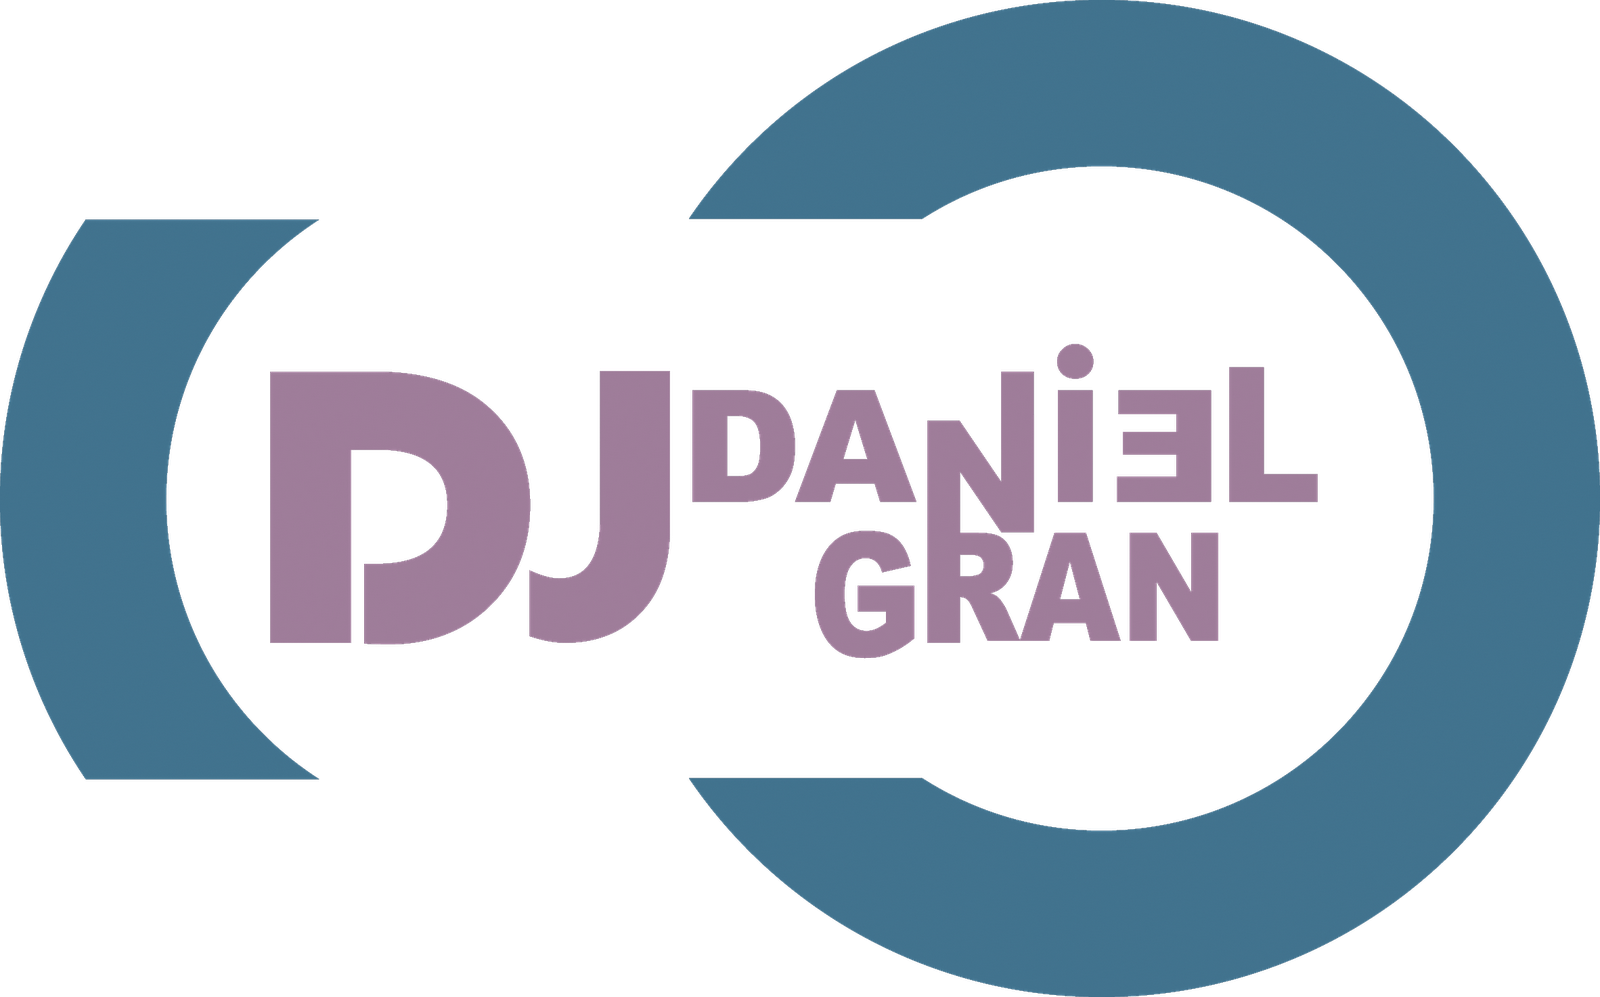 Dj Daniel Gran